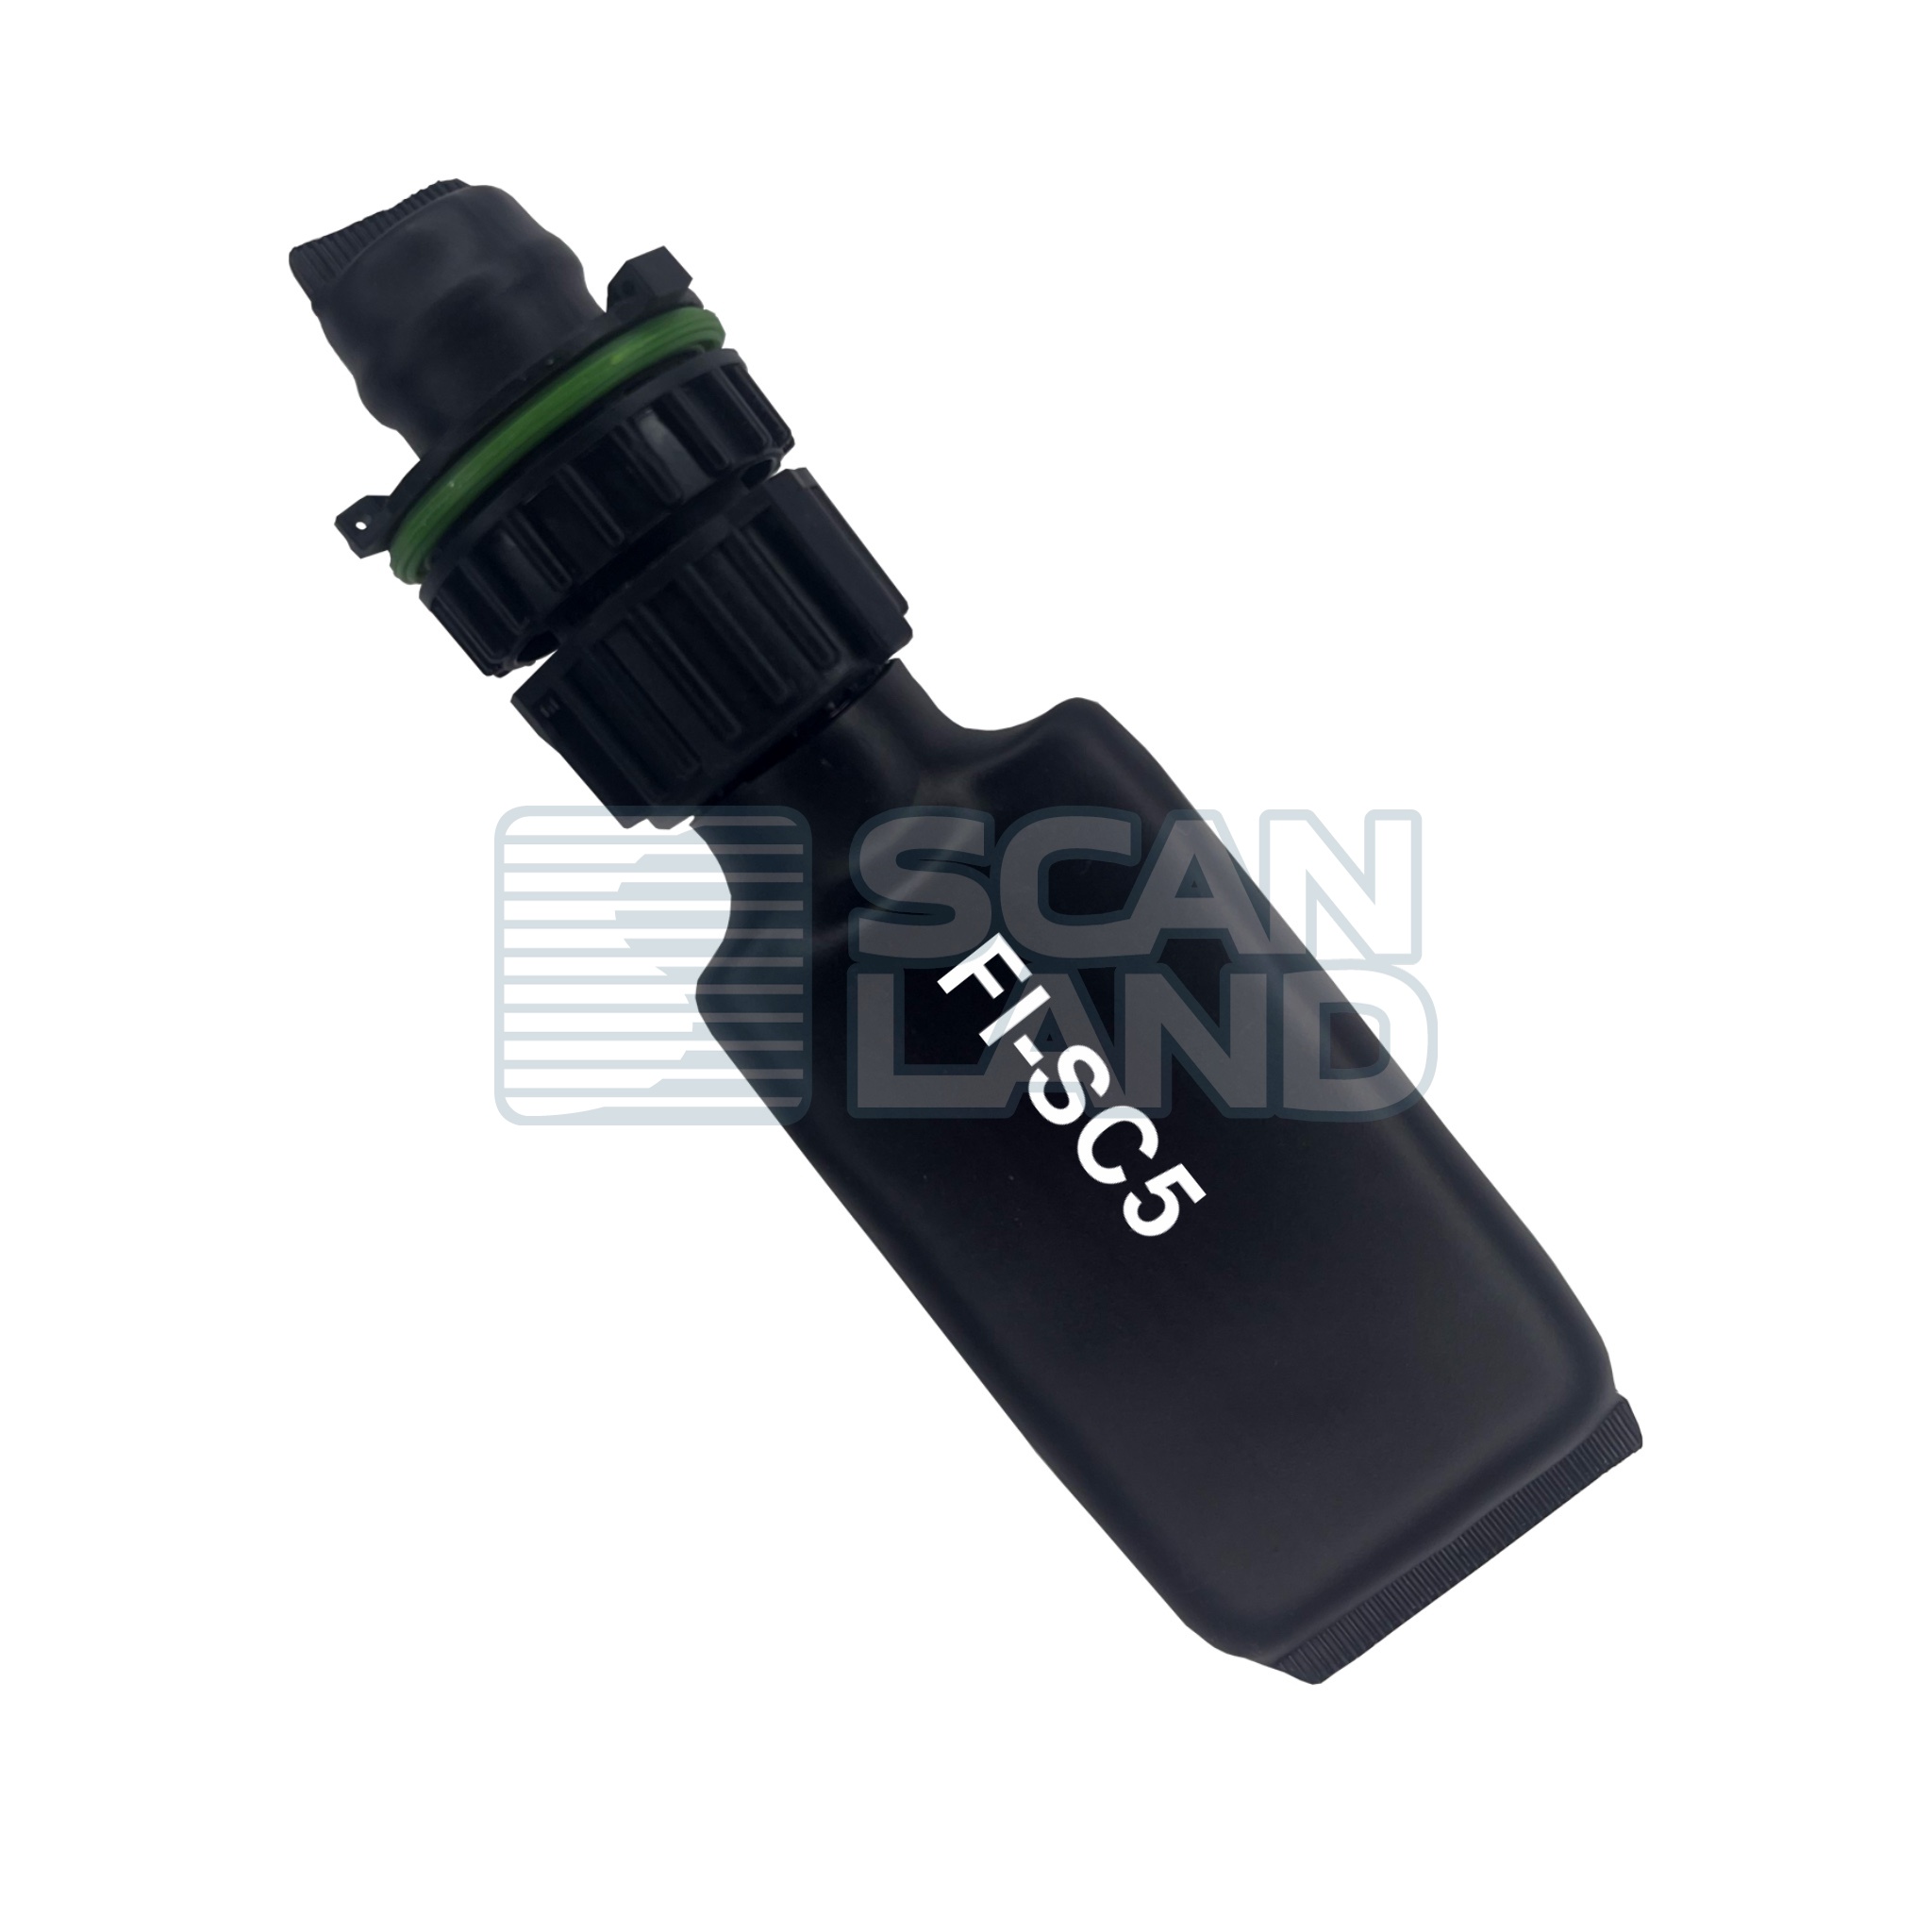 Эмулятор AdBlue Emu-Max FI-SC5 v.11.02 с разъемом C430 для Scania P/R/G серии 5, герметичный (быстрая установка)